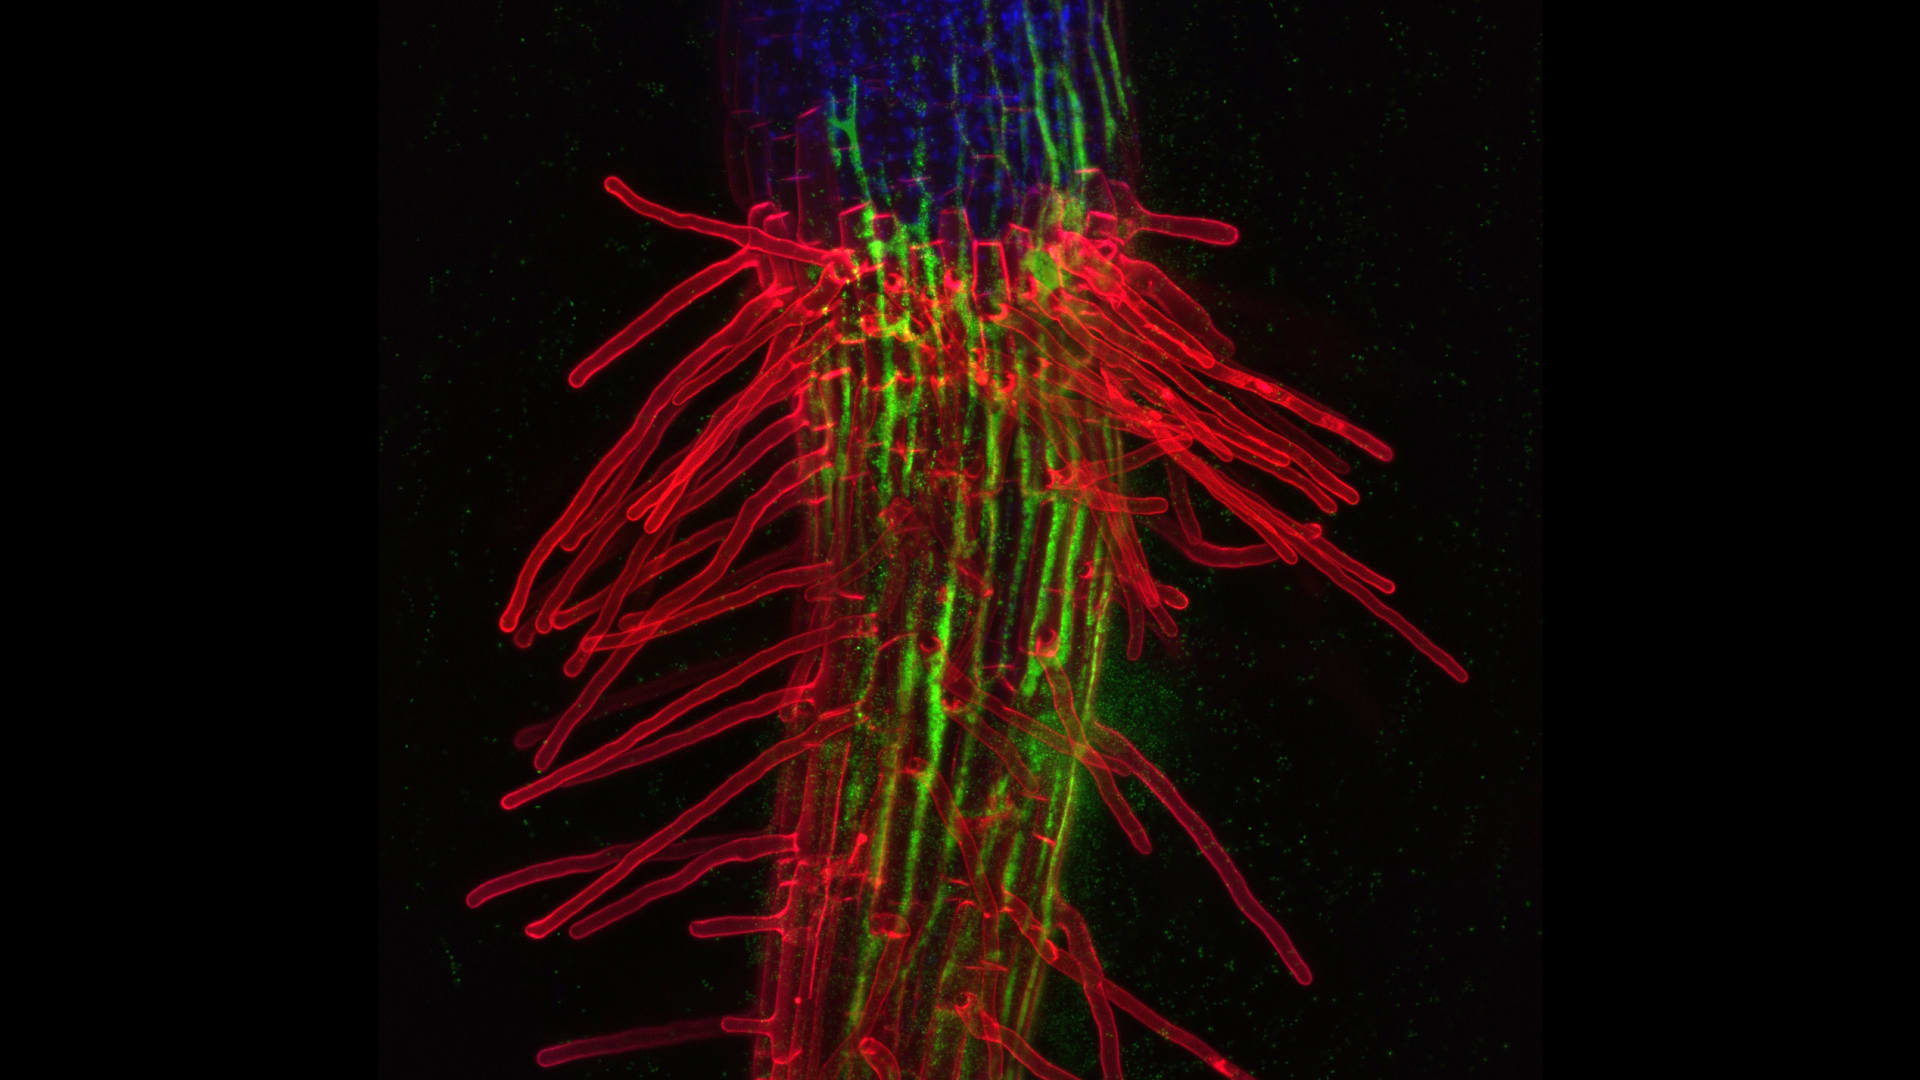 Semenáček huseníčku na rozhraní stonku a kořene (zeleně - bakterie, červeně - buněčné stěny, modře - chloroplasty). Červené výběžky jsou kořenové vlásky. Fluorescenční mikroskopie.